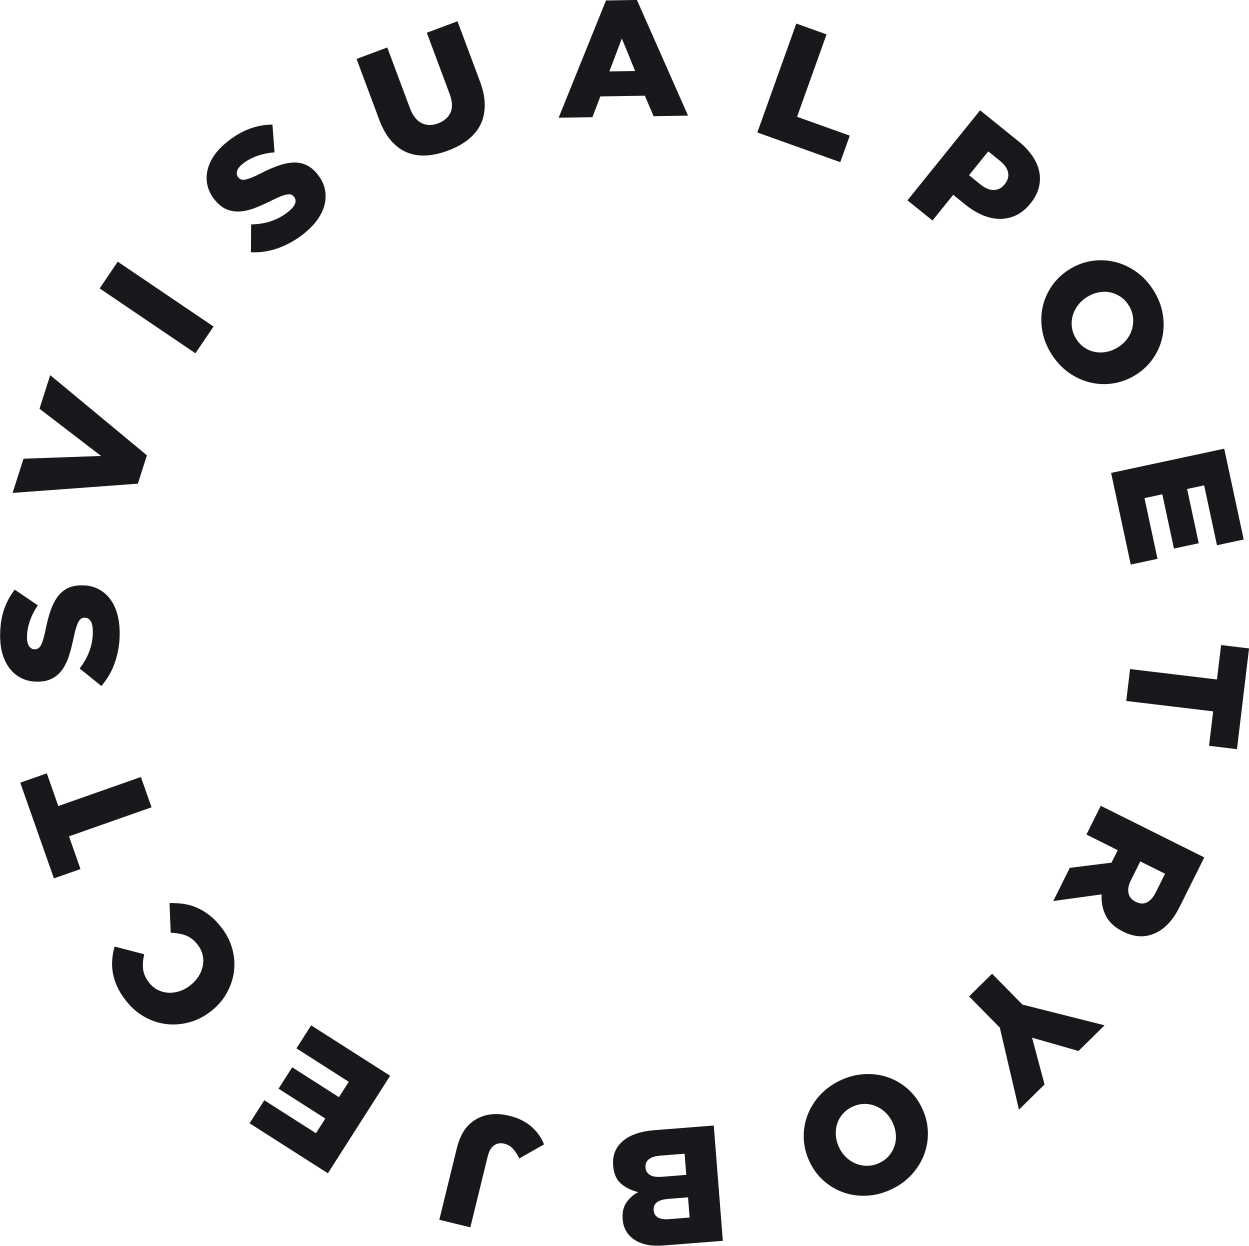 Visualpoetryobjects